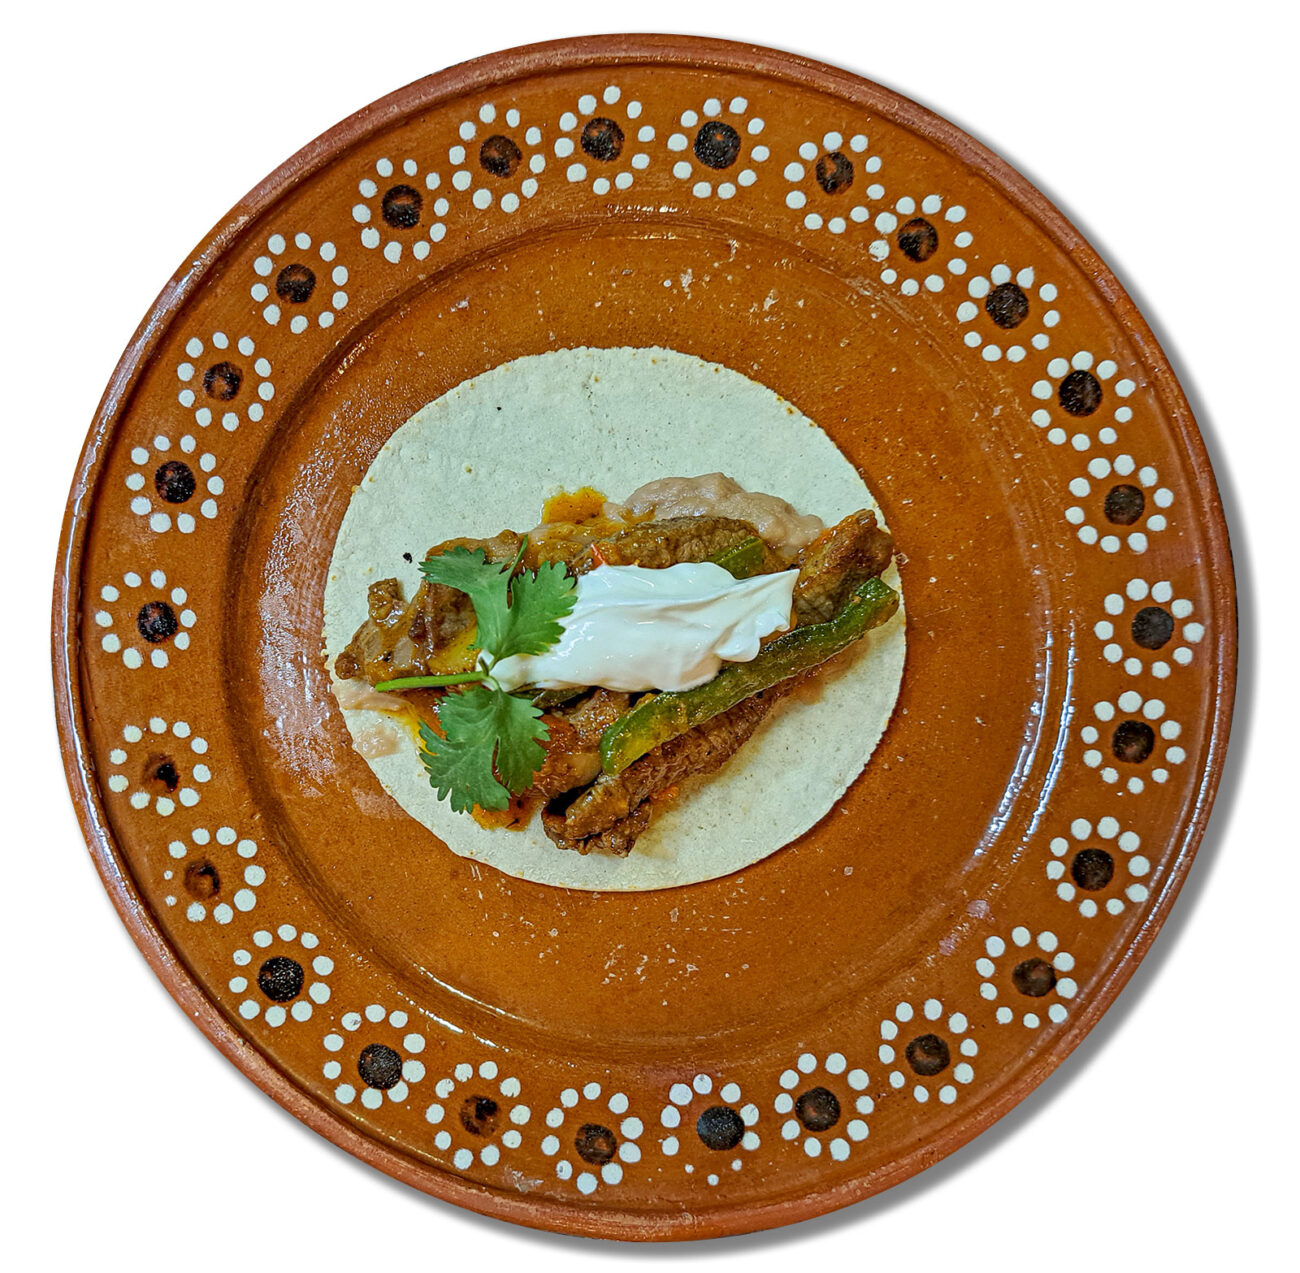 Strimlad biff med potatis och jalapeño – en ekonomisk tacofyllning och gryta till ris och bönor!